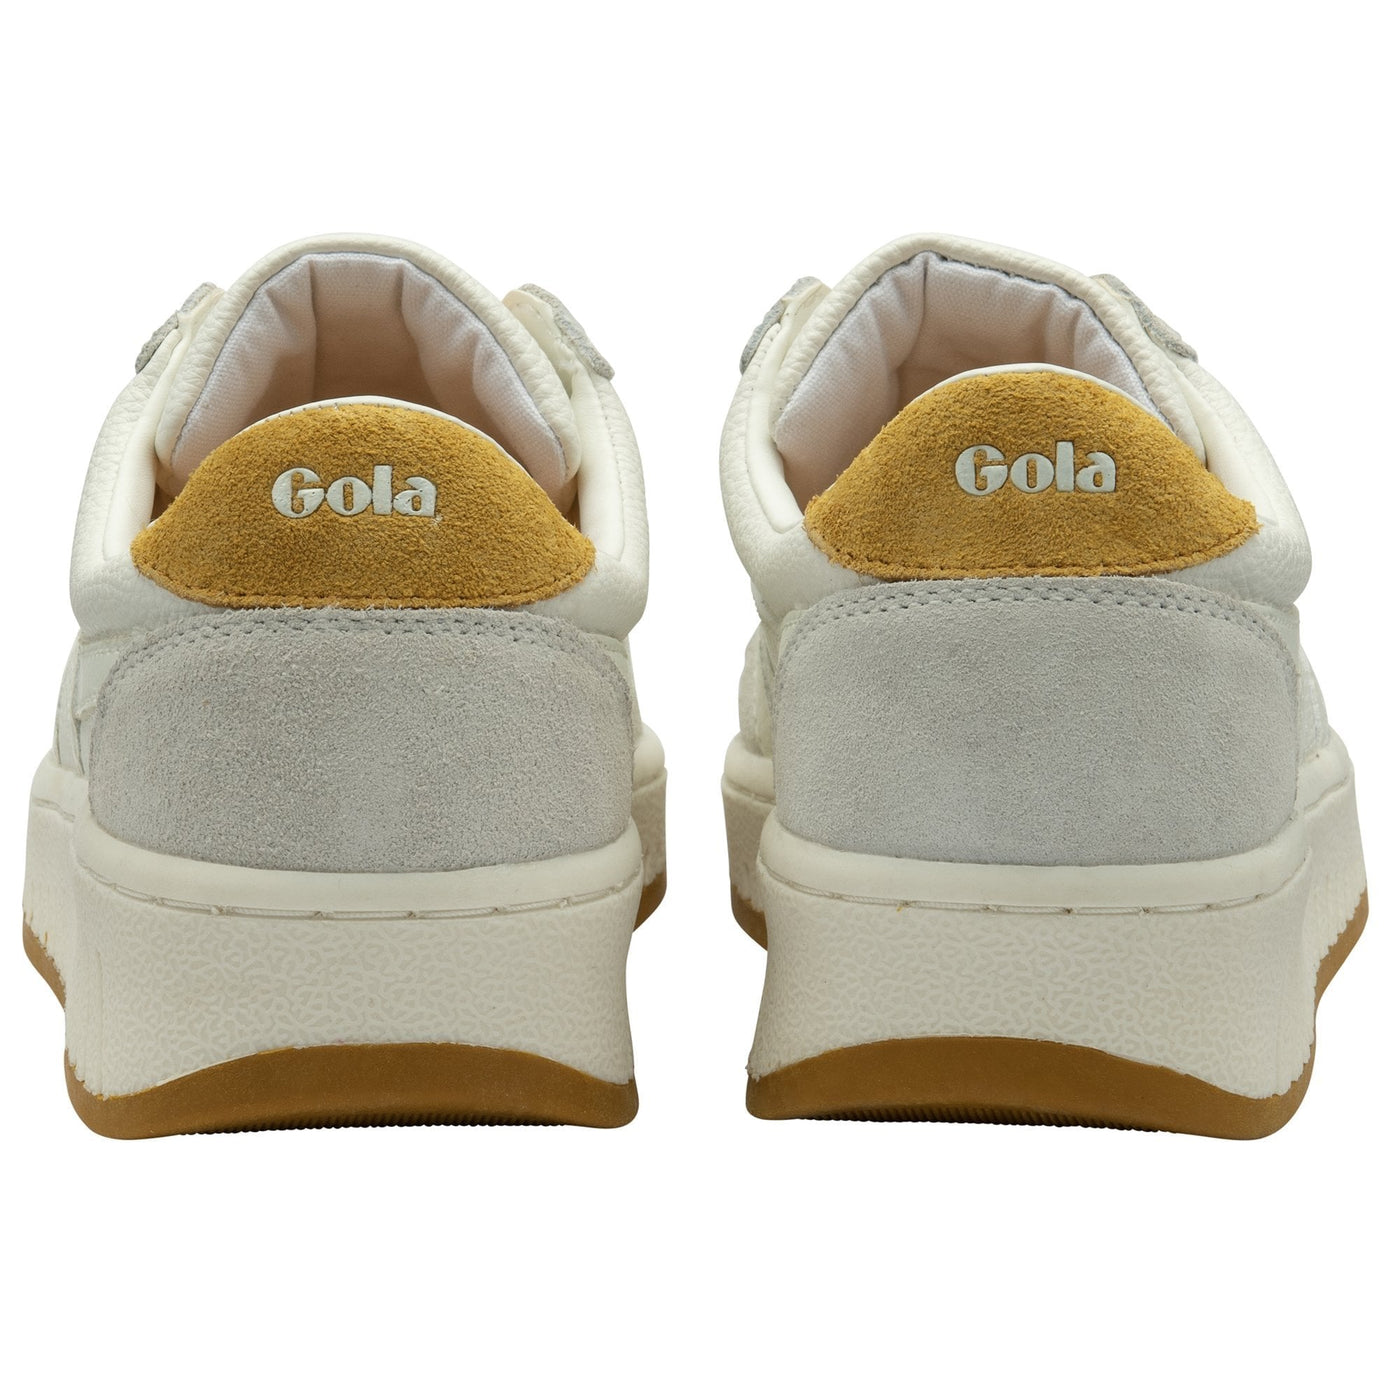 Gola Classics Women's Grandslam '88 Sneakers